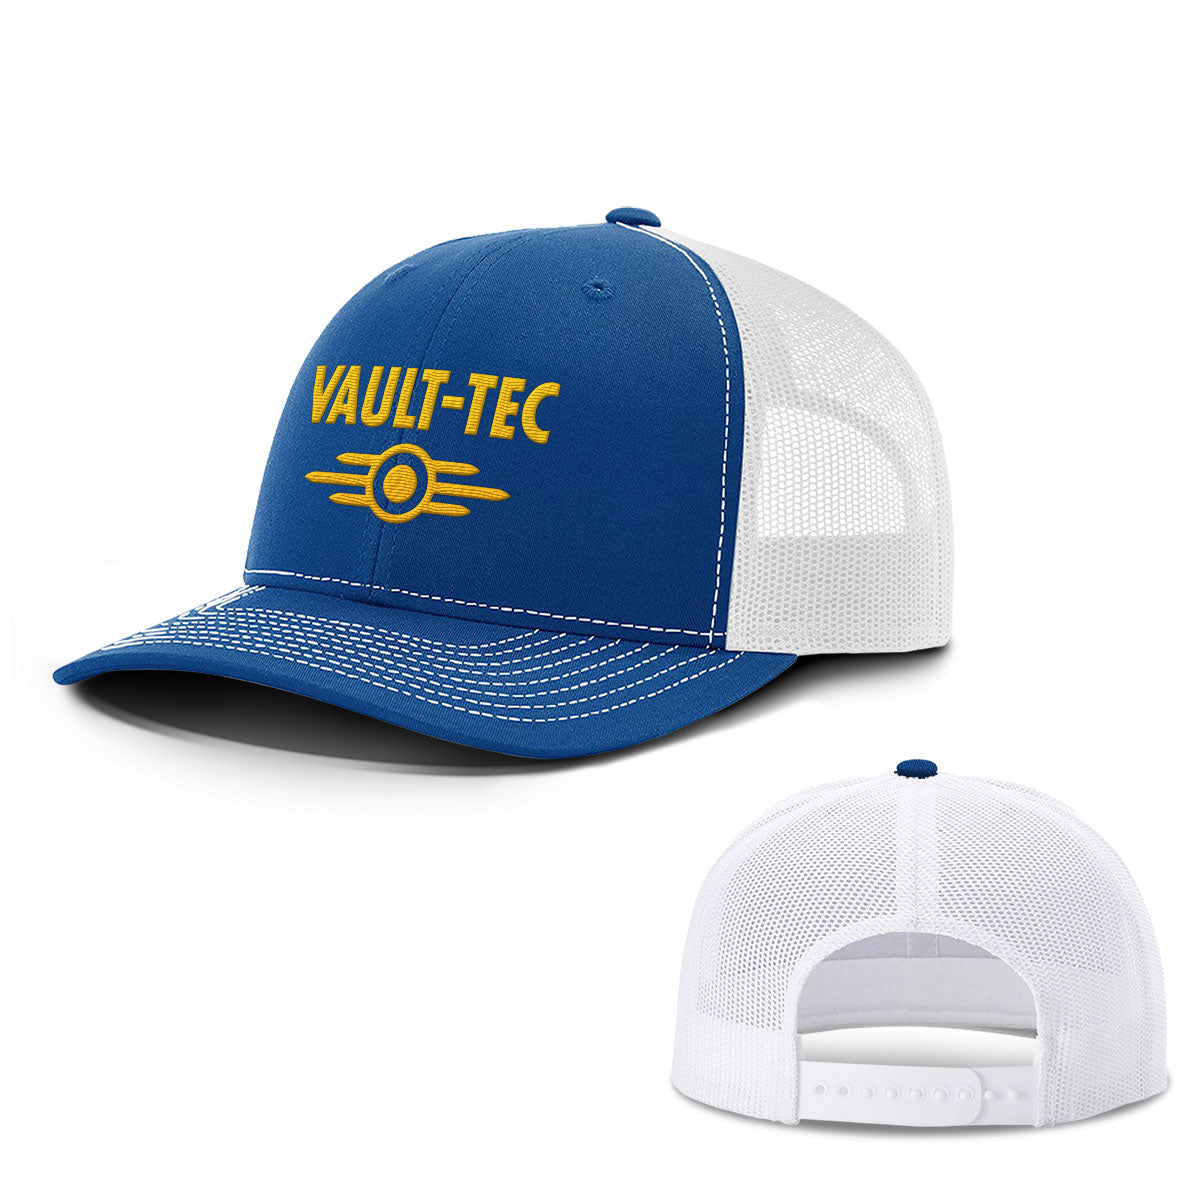 Vault-Tec Hats